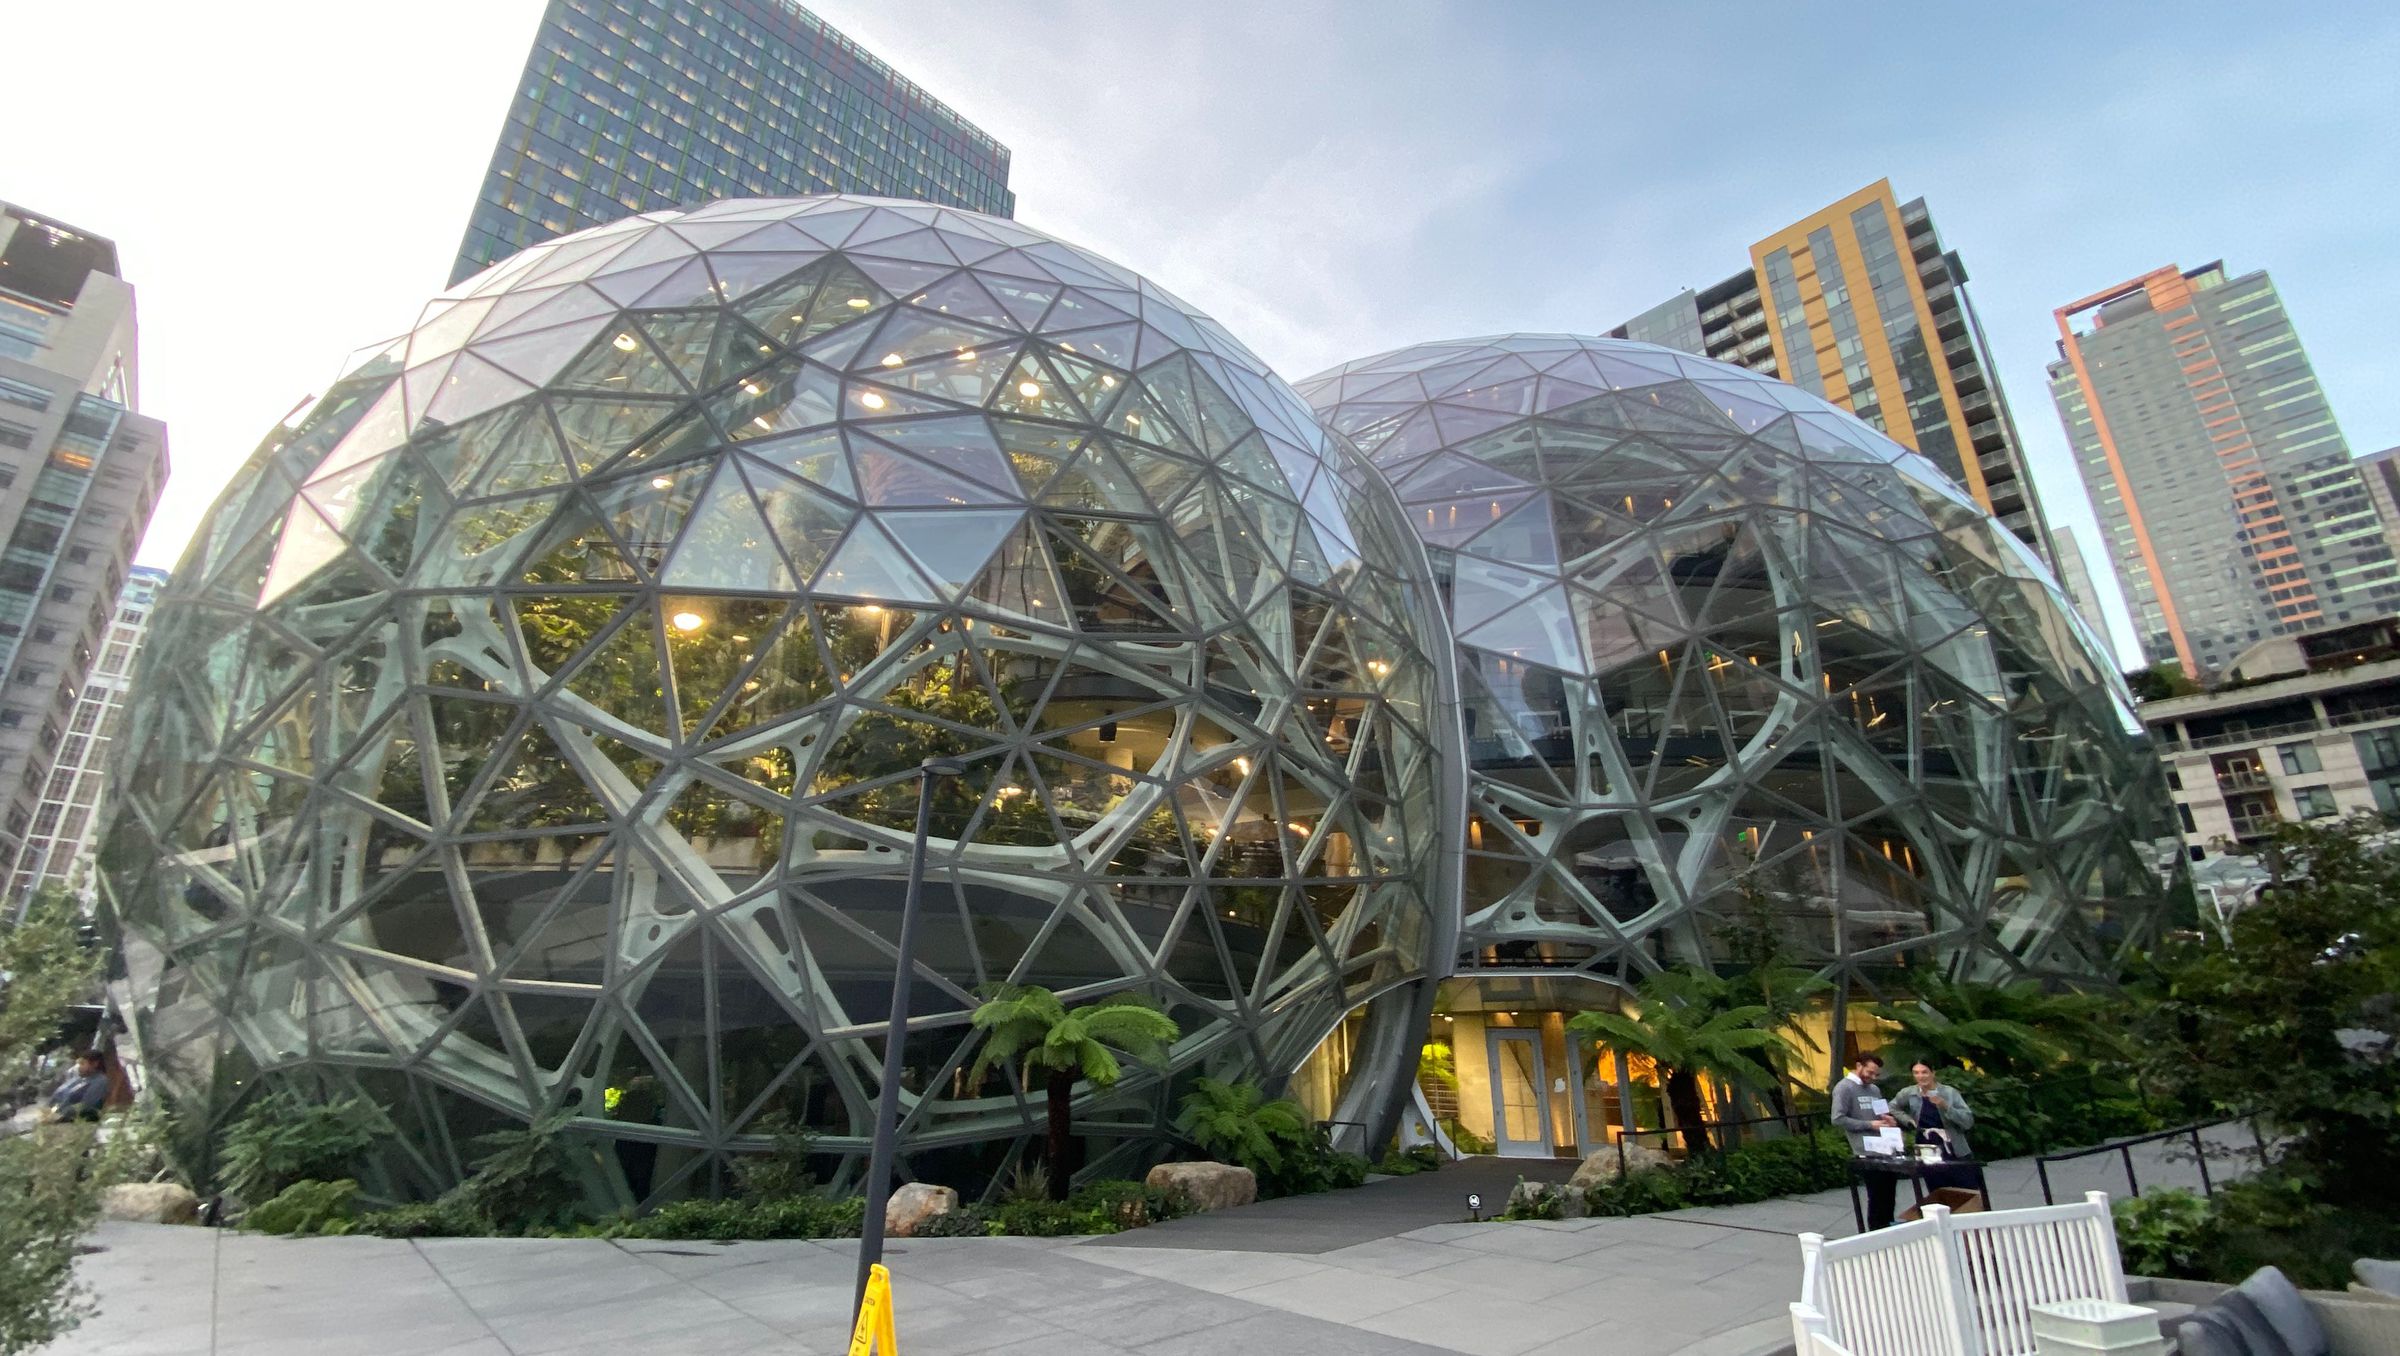 Amazon’s Spheres